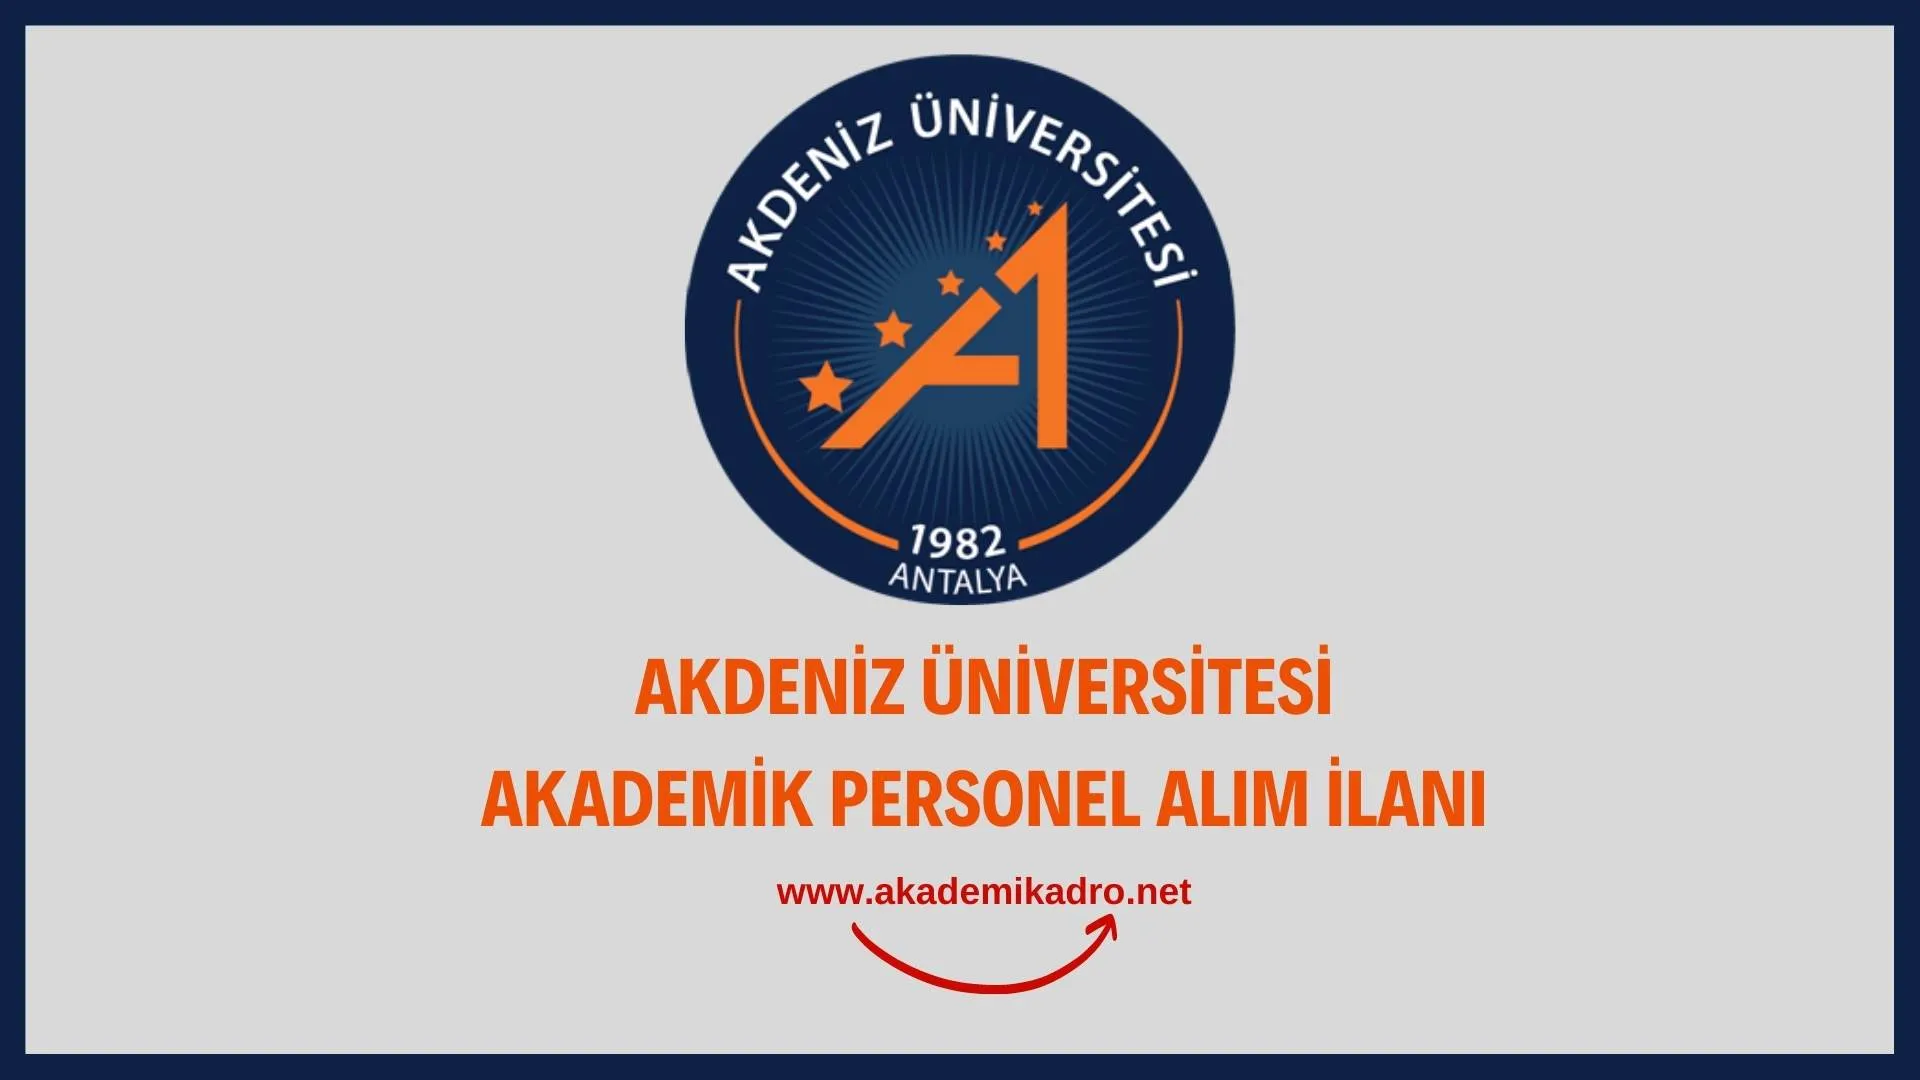 Akdeniz Üniversitesi çeşitli alanlardan 34 akademik personel alacak.